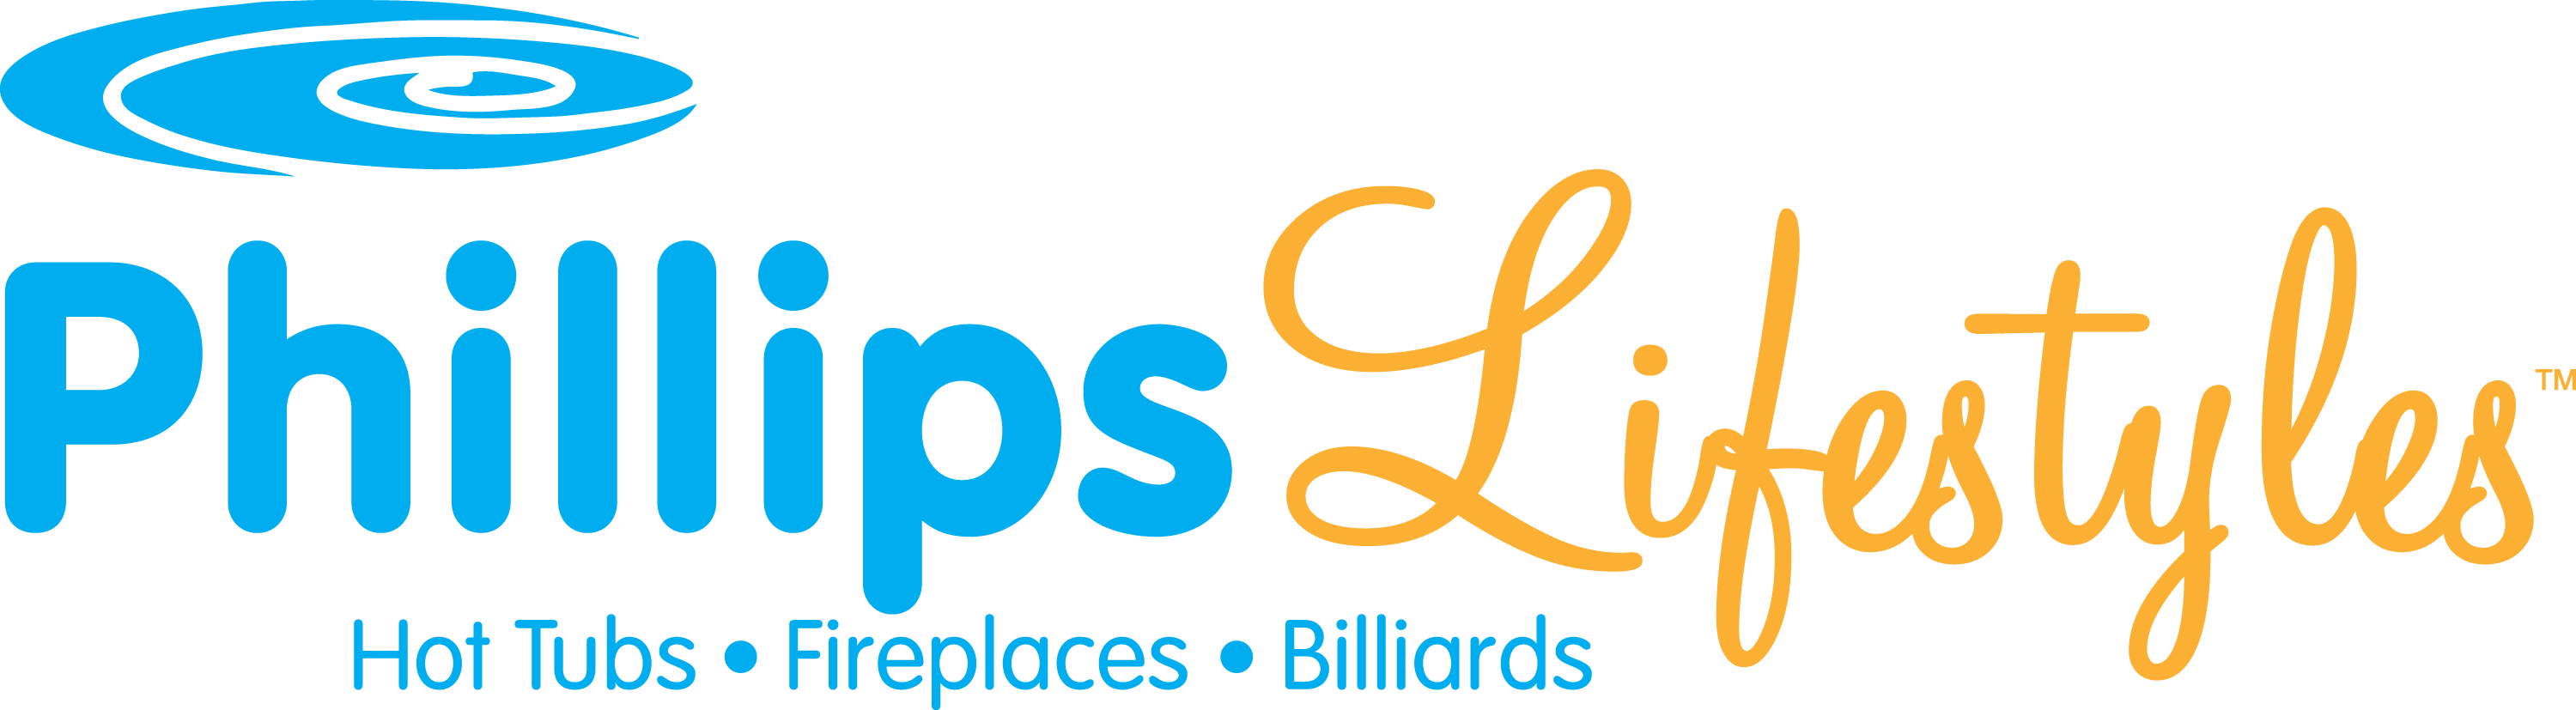 Phillips logo horizontal w tagline 3000x800